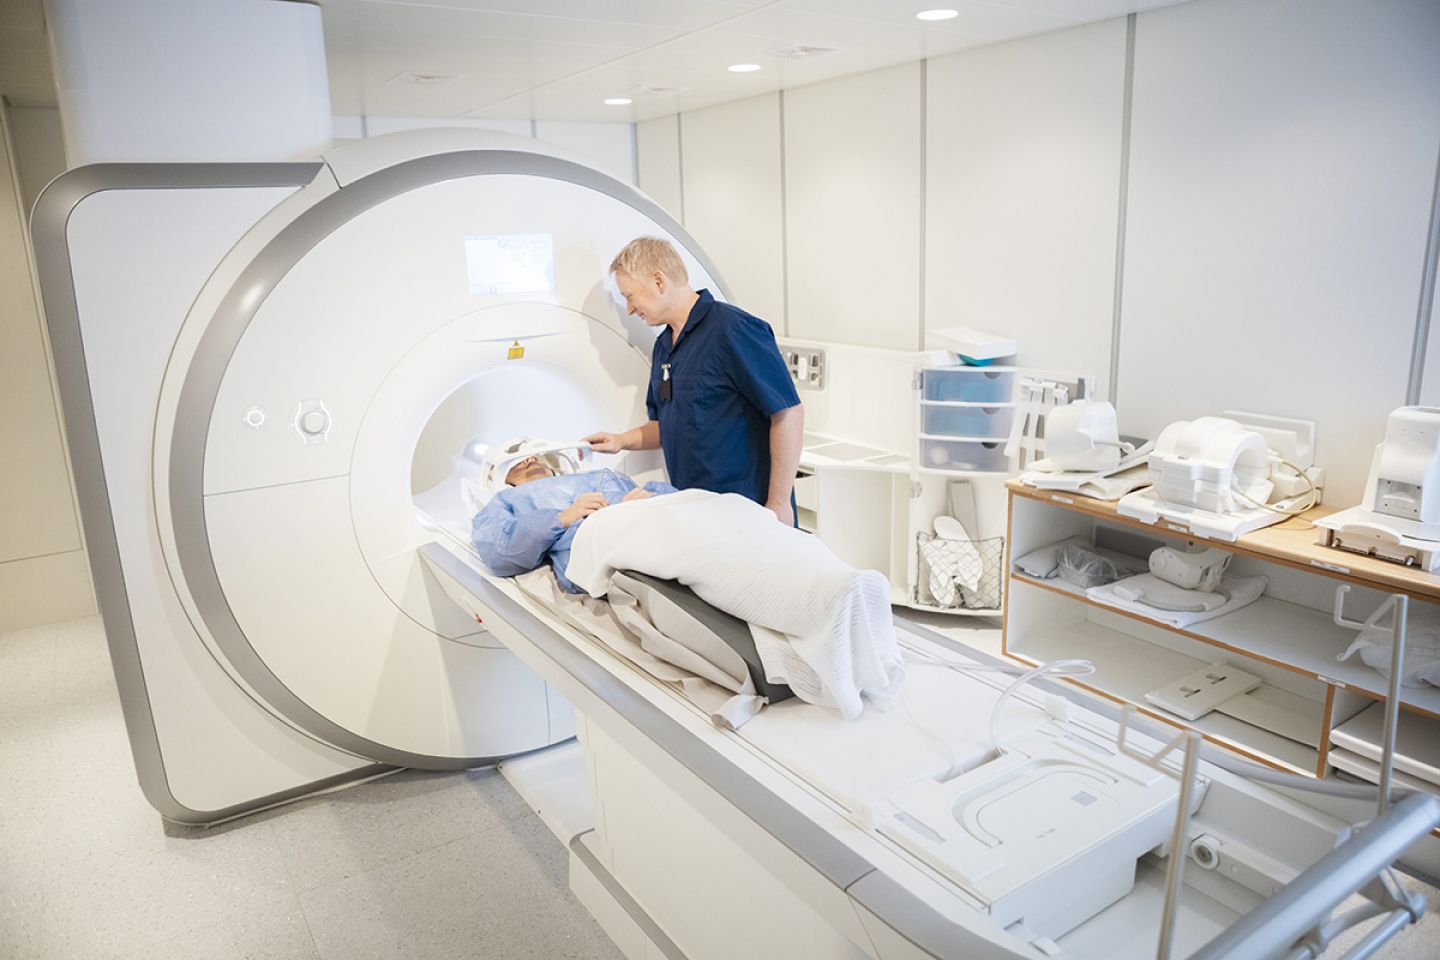 Eine Frau liegt auf dem Untersuchungstisch eines Magnetresonanztomographen, neben ihr steht ein Mann in einem blauen Kittel.